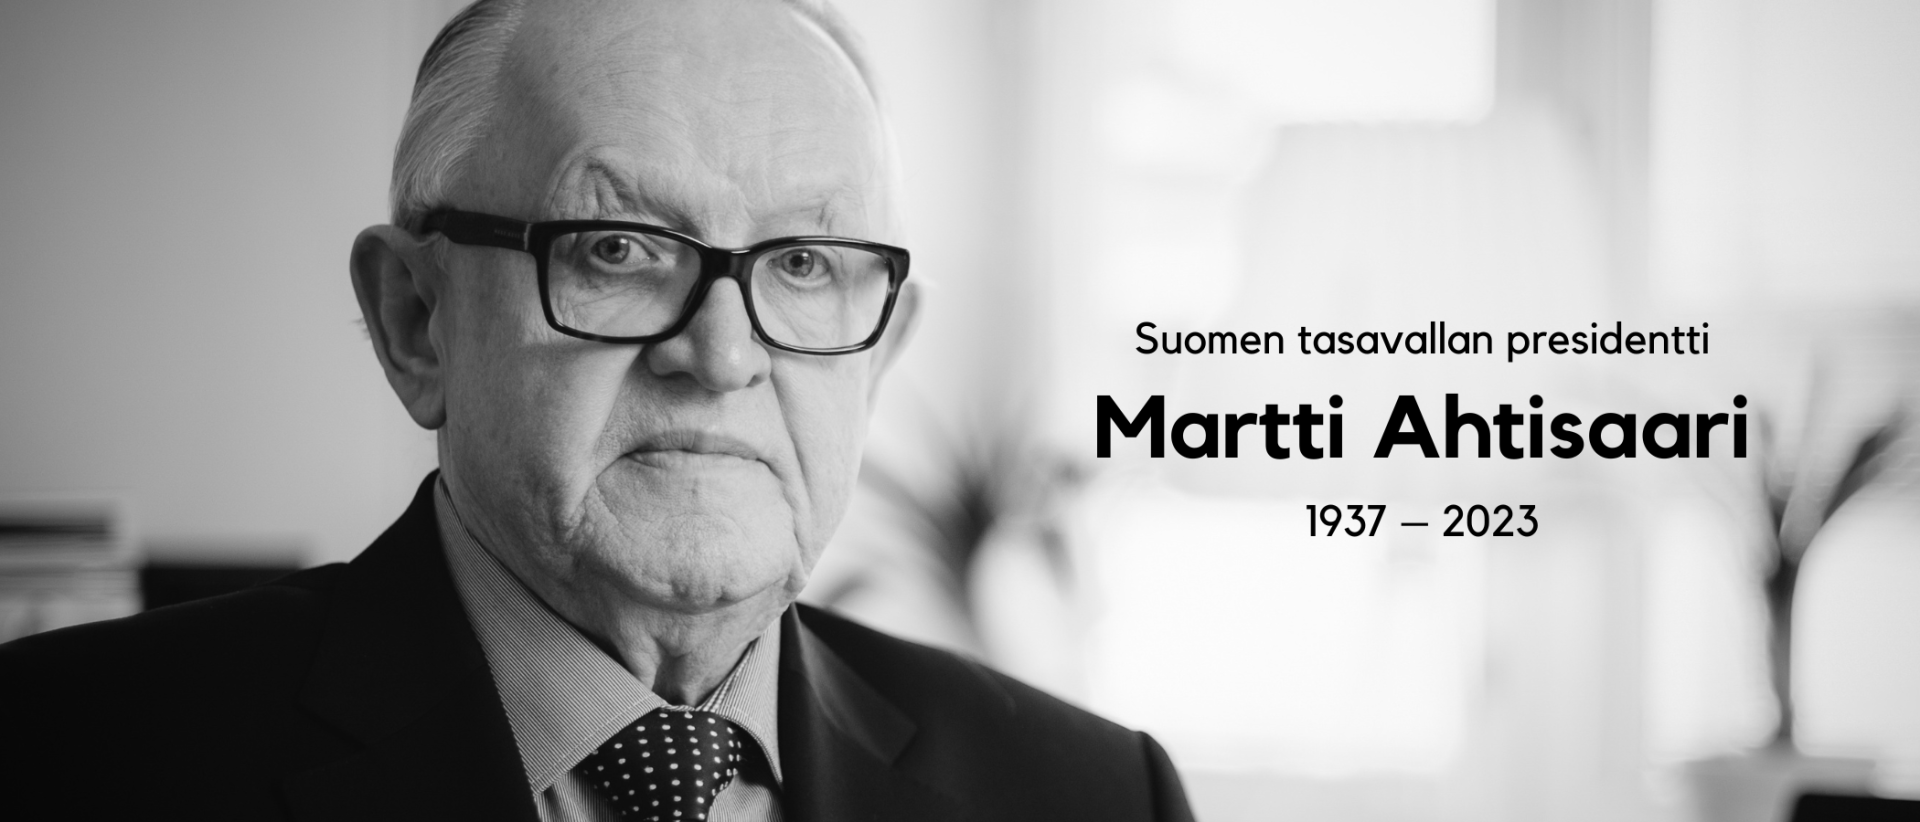 Presidentti Ahtisaaren siunaustilaisuus alkaa klo 13 Helsingin tuomiokirkossa ja päättyy klo 14.30.